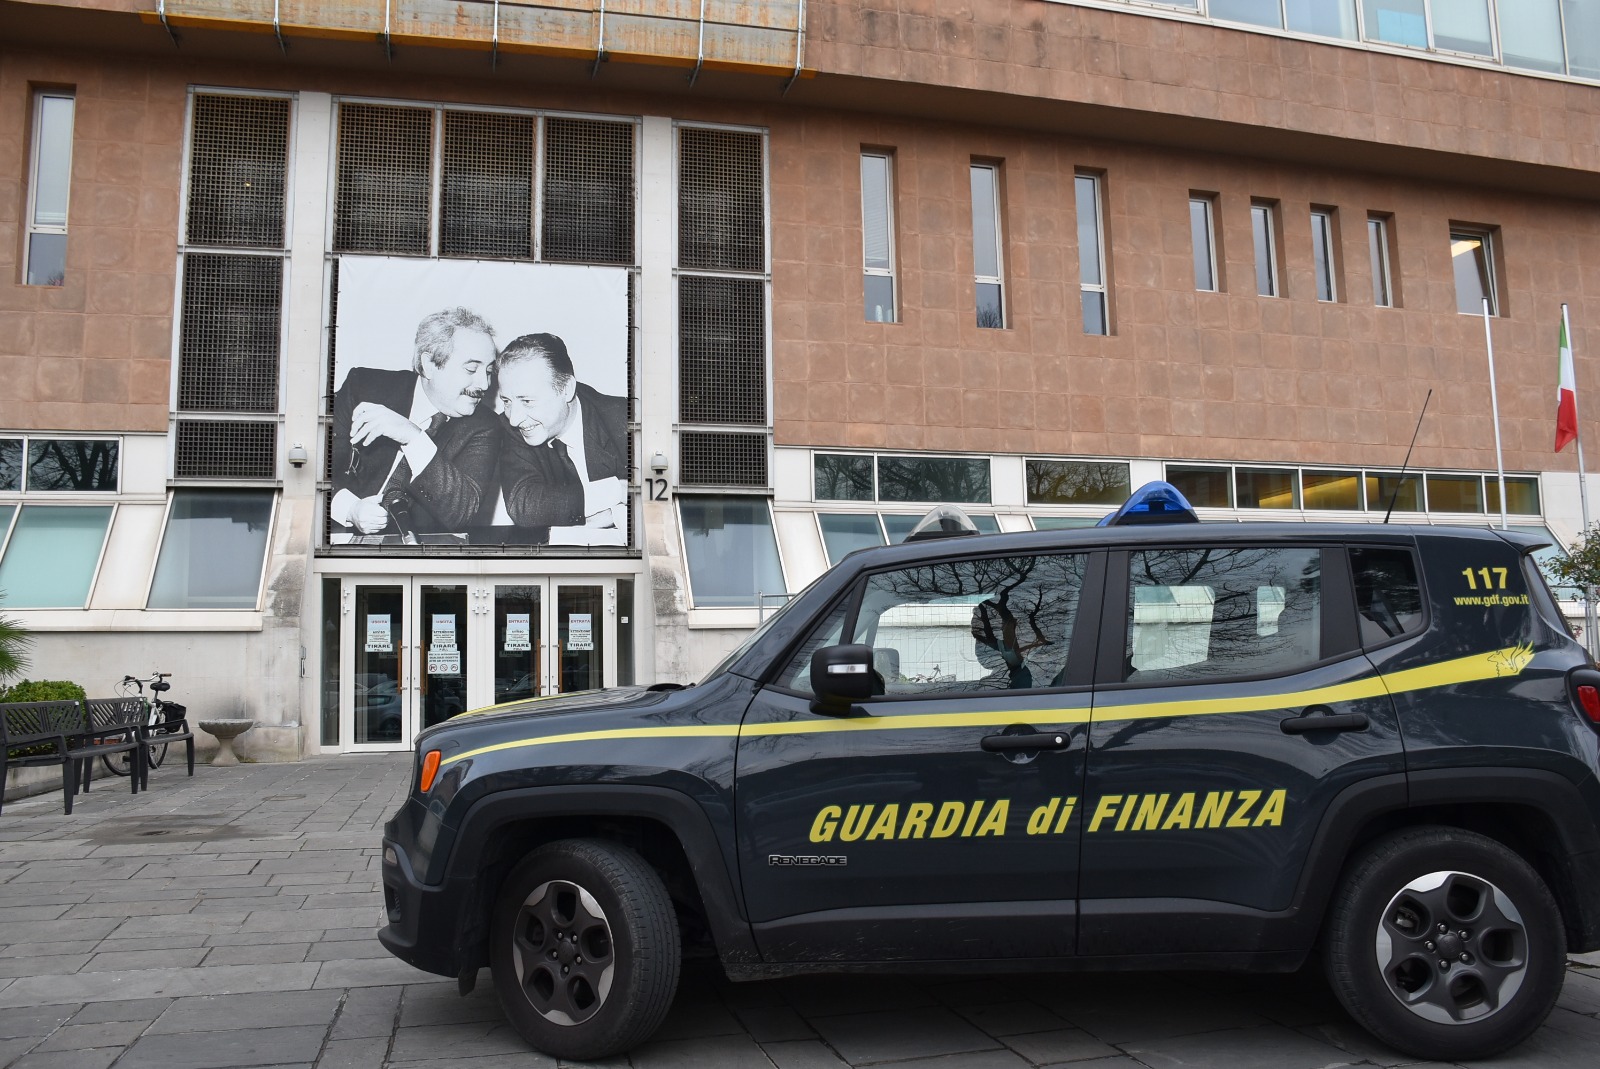 Pesaro – Testamento falso per appropriarsi dei beni di un anziano deceduto, badante smascherata dalla Guardia di Finanza